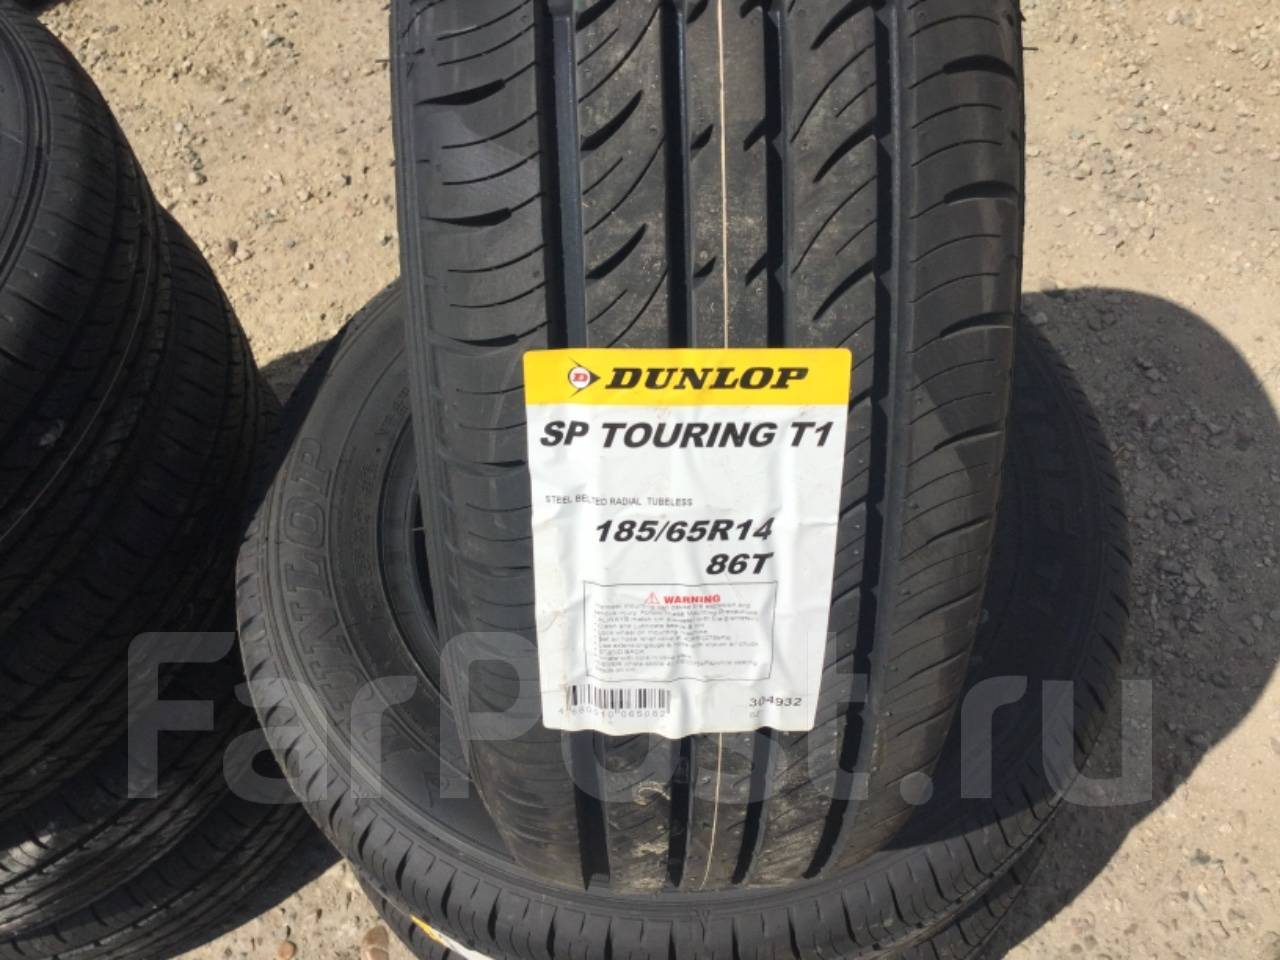 Купить шины в благовещенске. Автомобильная шина Dunlop SP Touring r1 185/65 r14 86t летняя. В Благовещенске на Тополиной 3 есть авторезина 185 65 14 летняя.